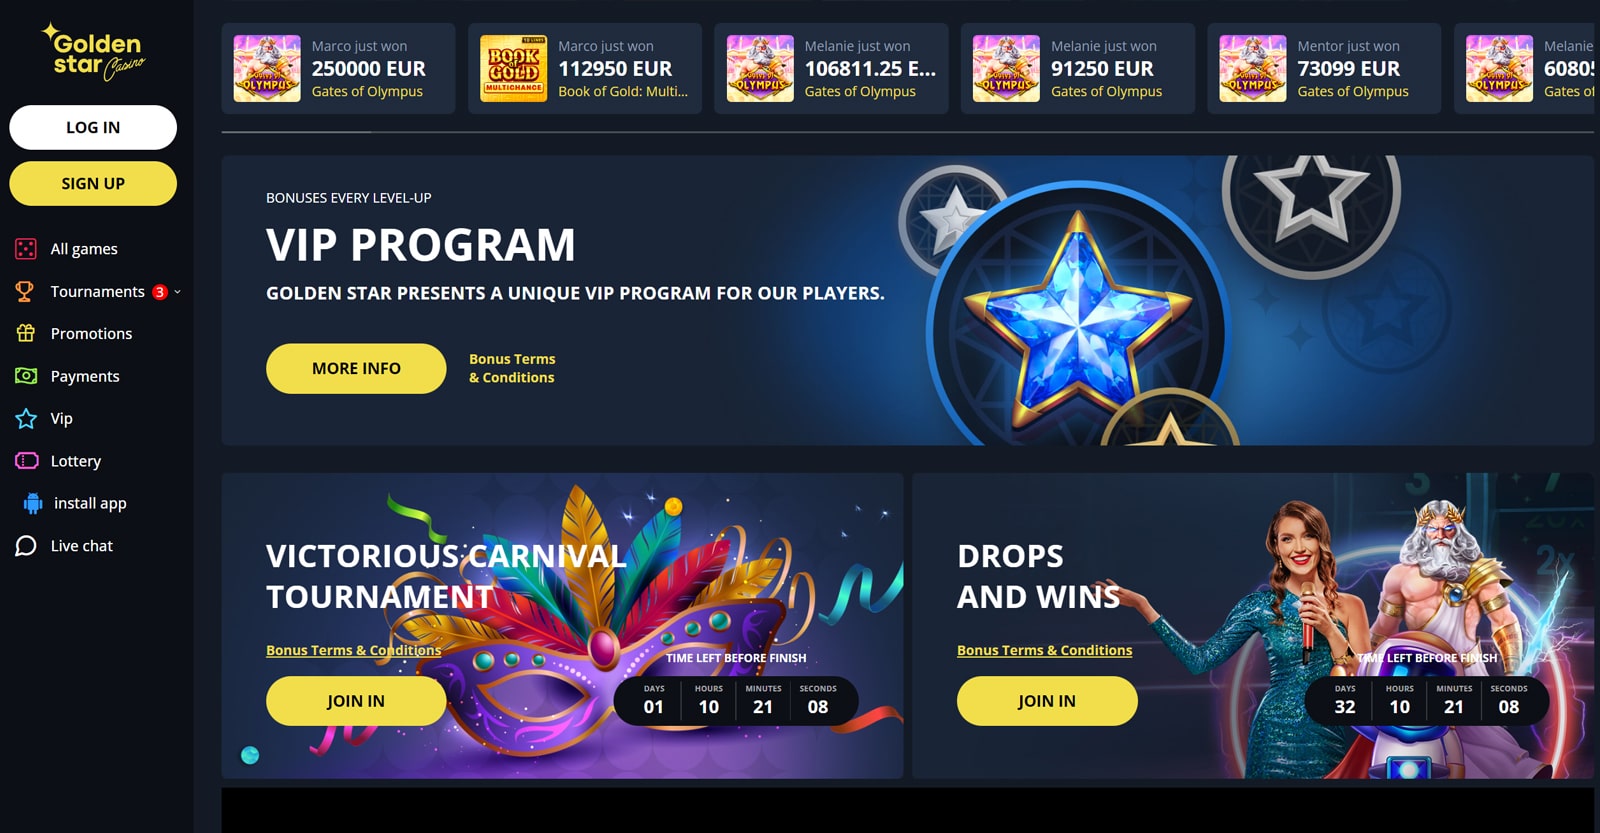 golden star casino bonus